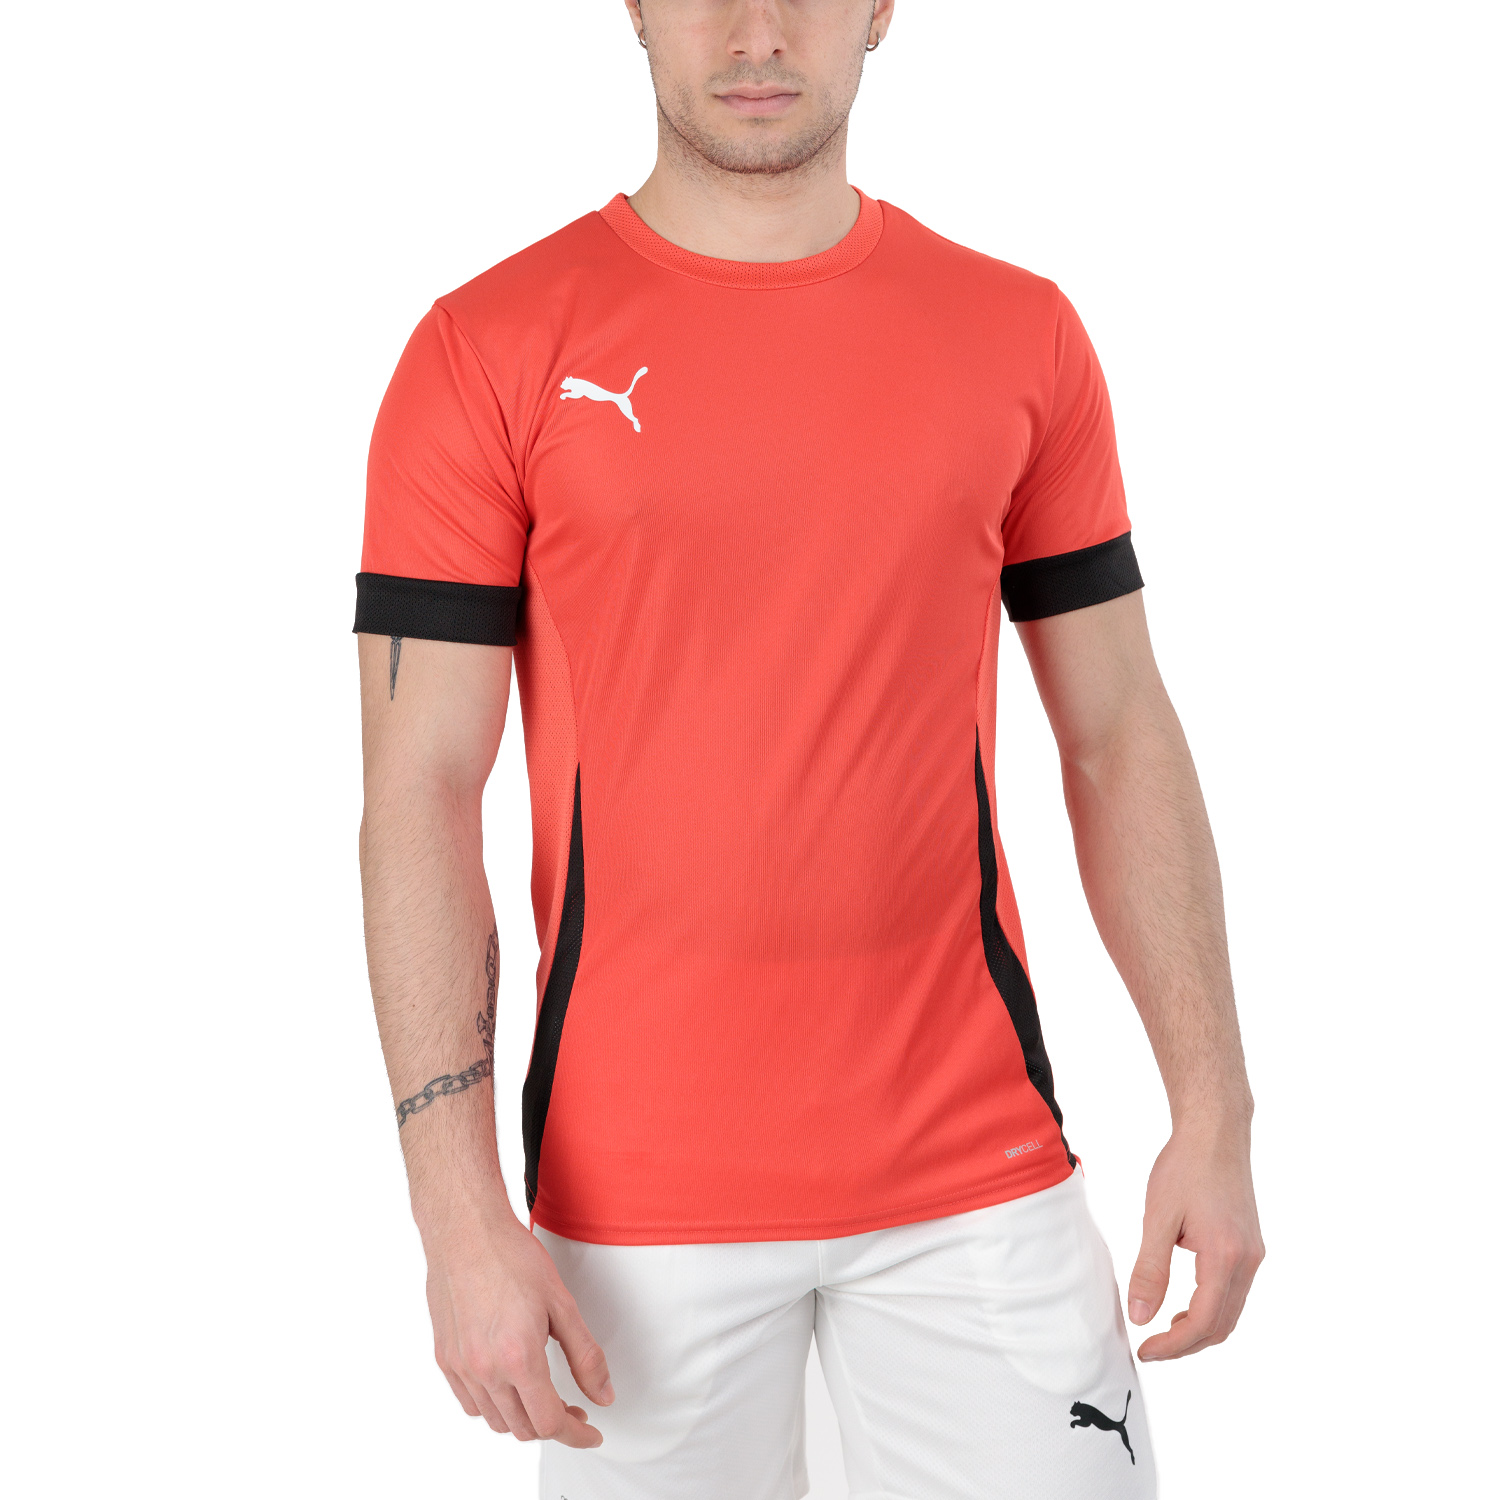 Puma Individual Camiseta - Active Red